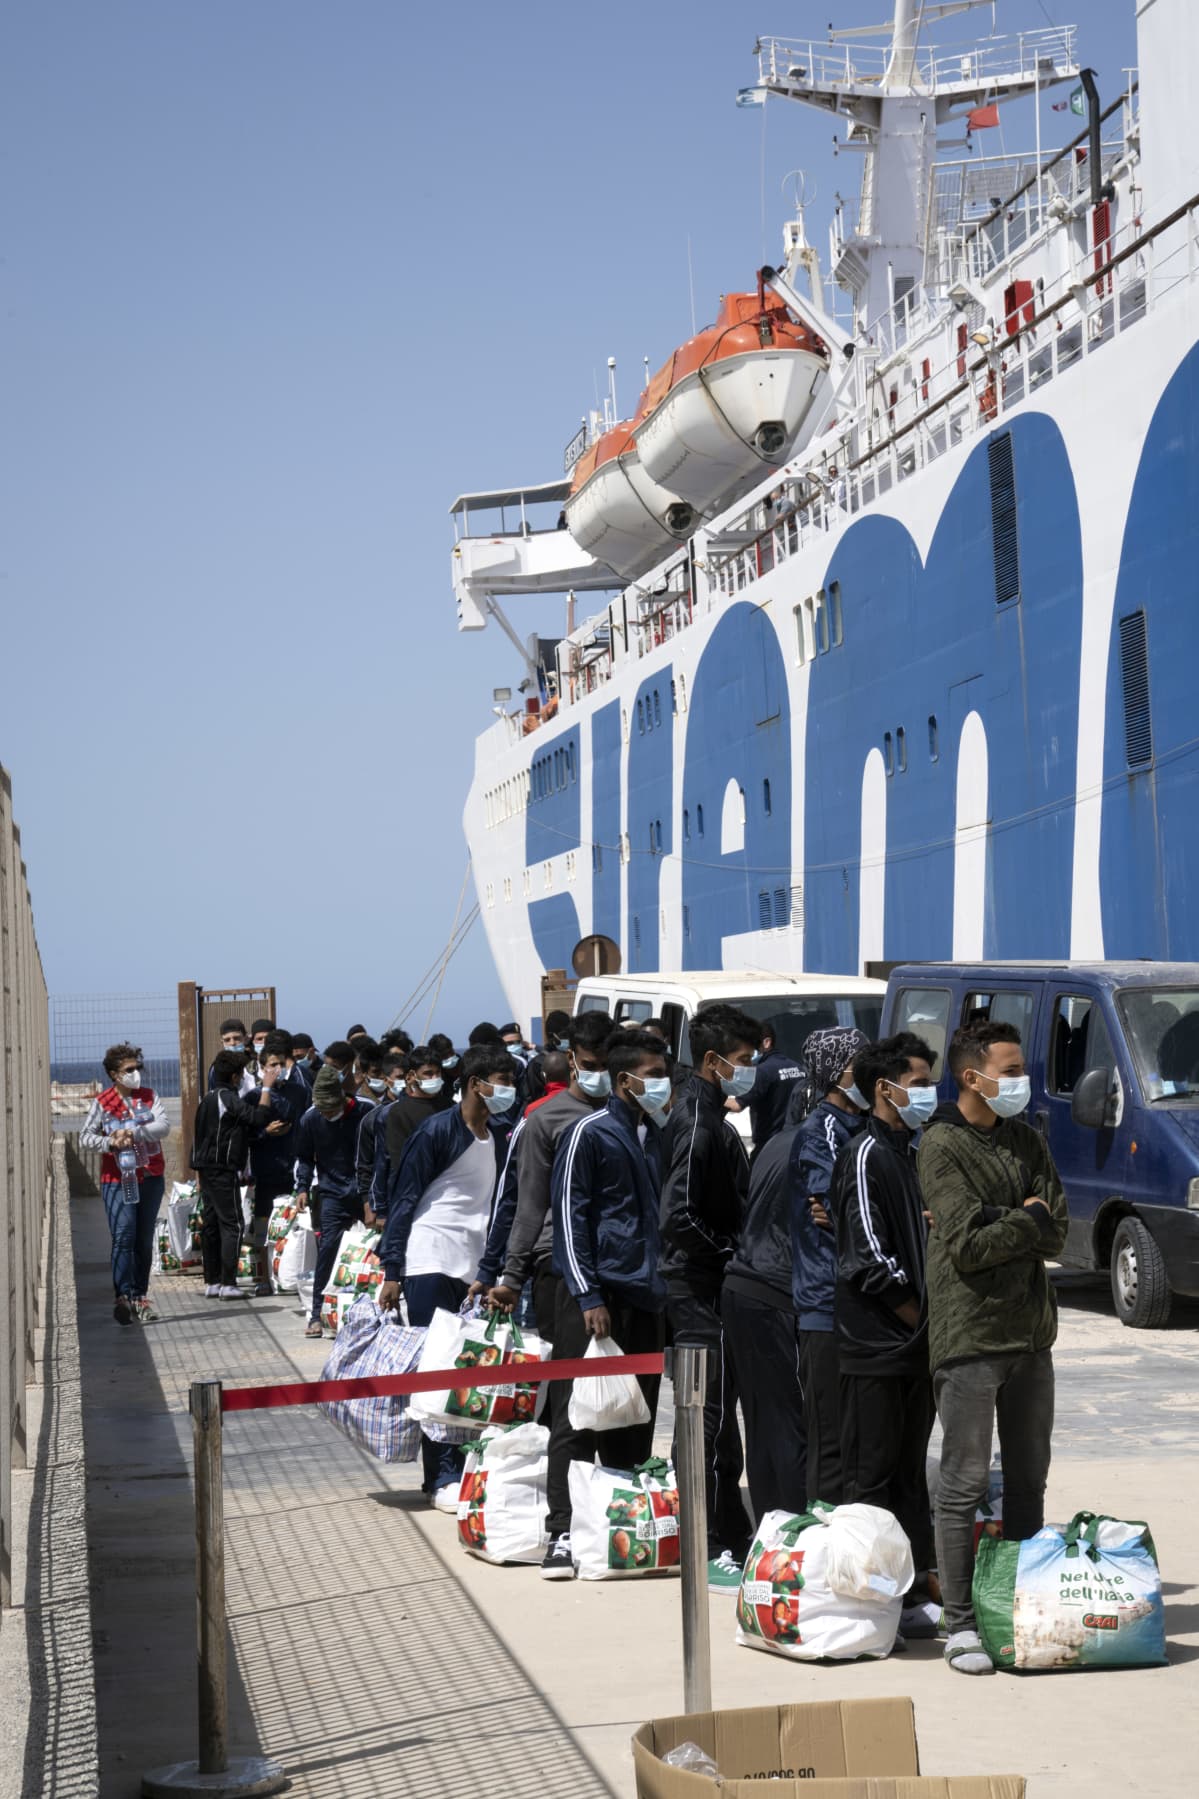 Siirtolaisi jonossa satamassa Lampedusassa.